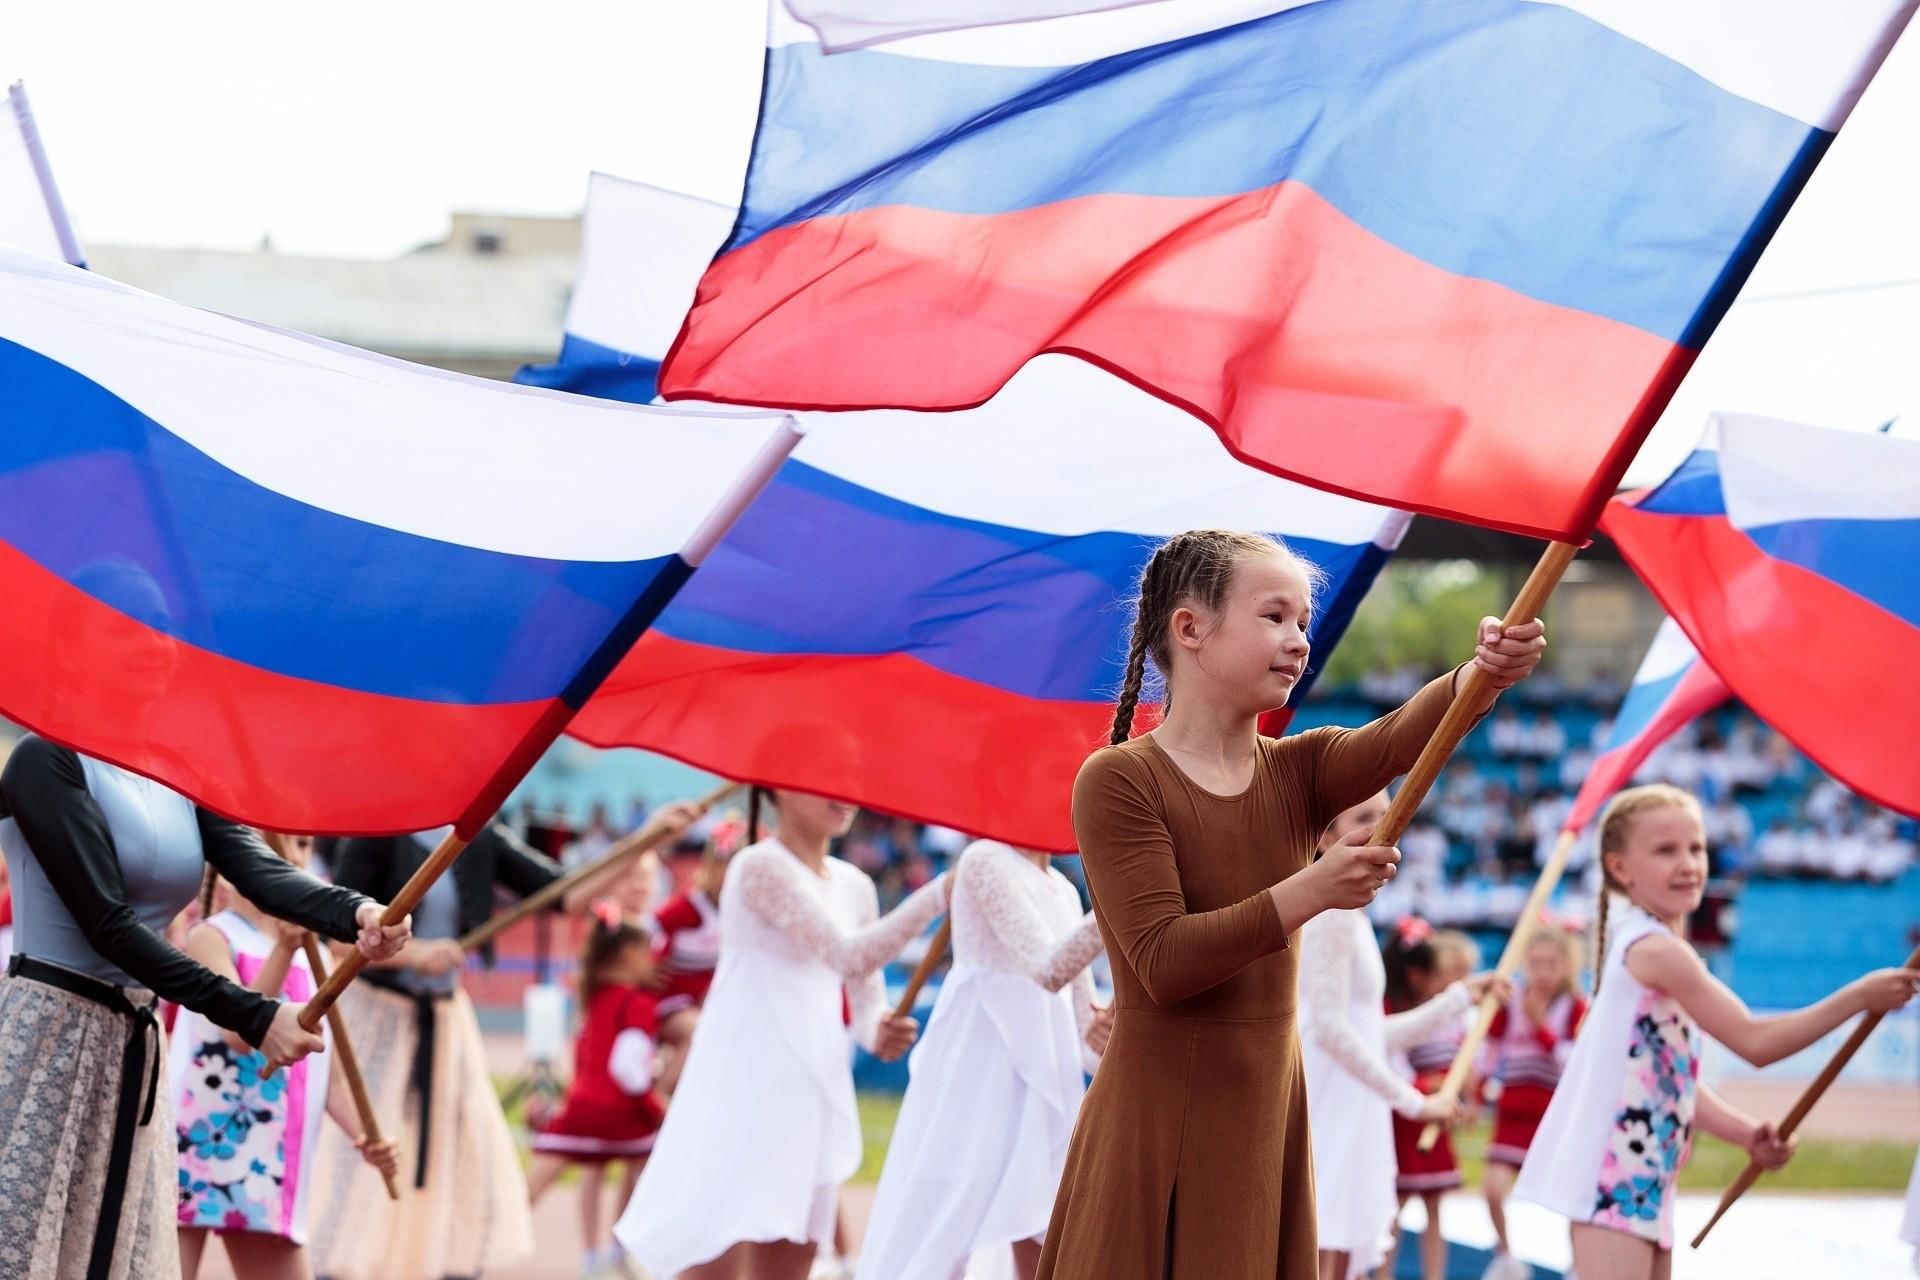 Правительство РФ обеспечит государственной символикой 11 тысяч школ в регионах